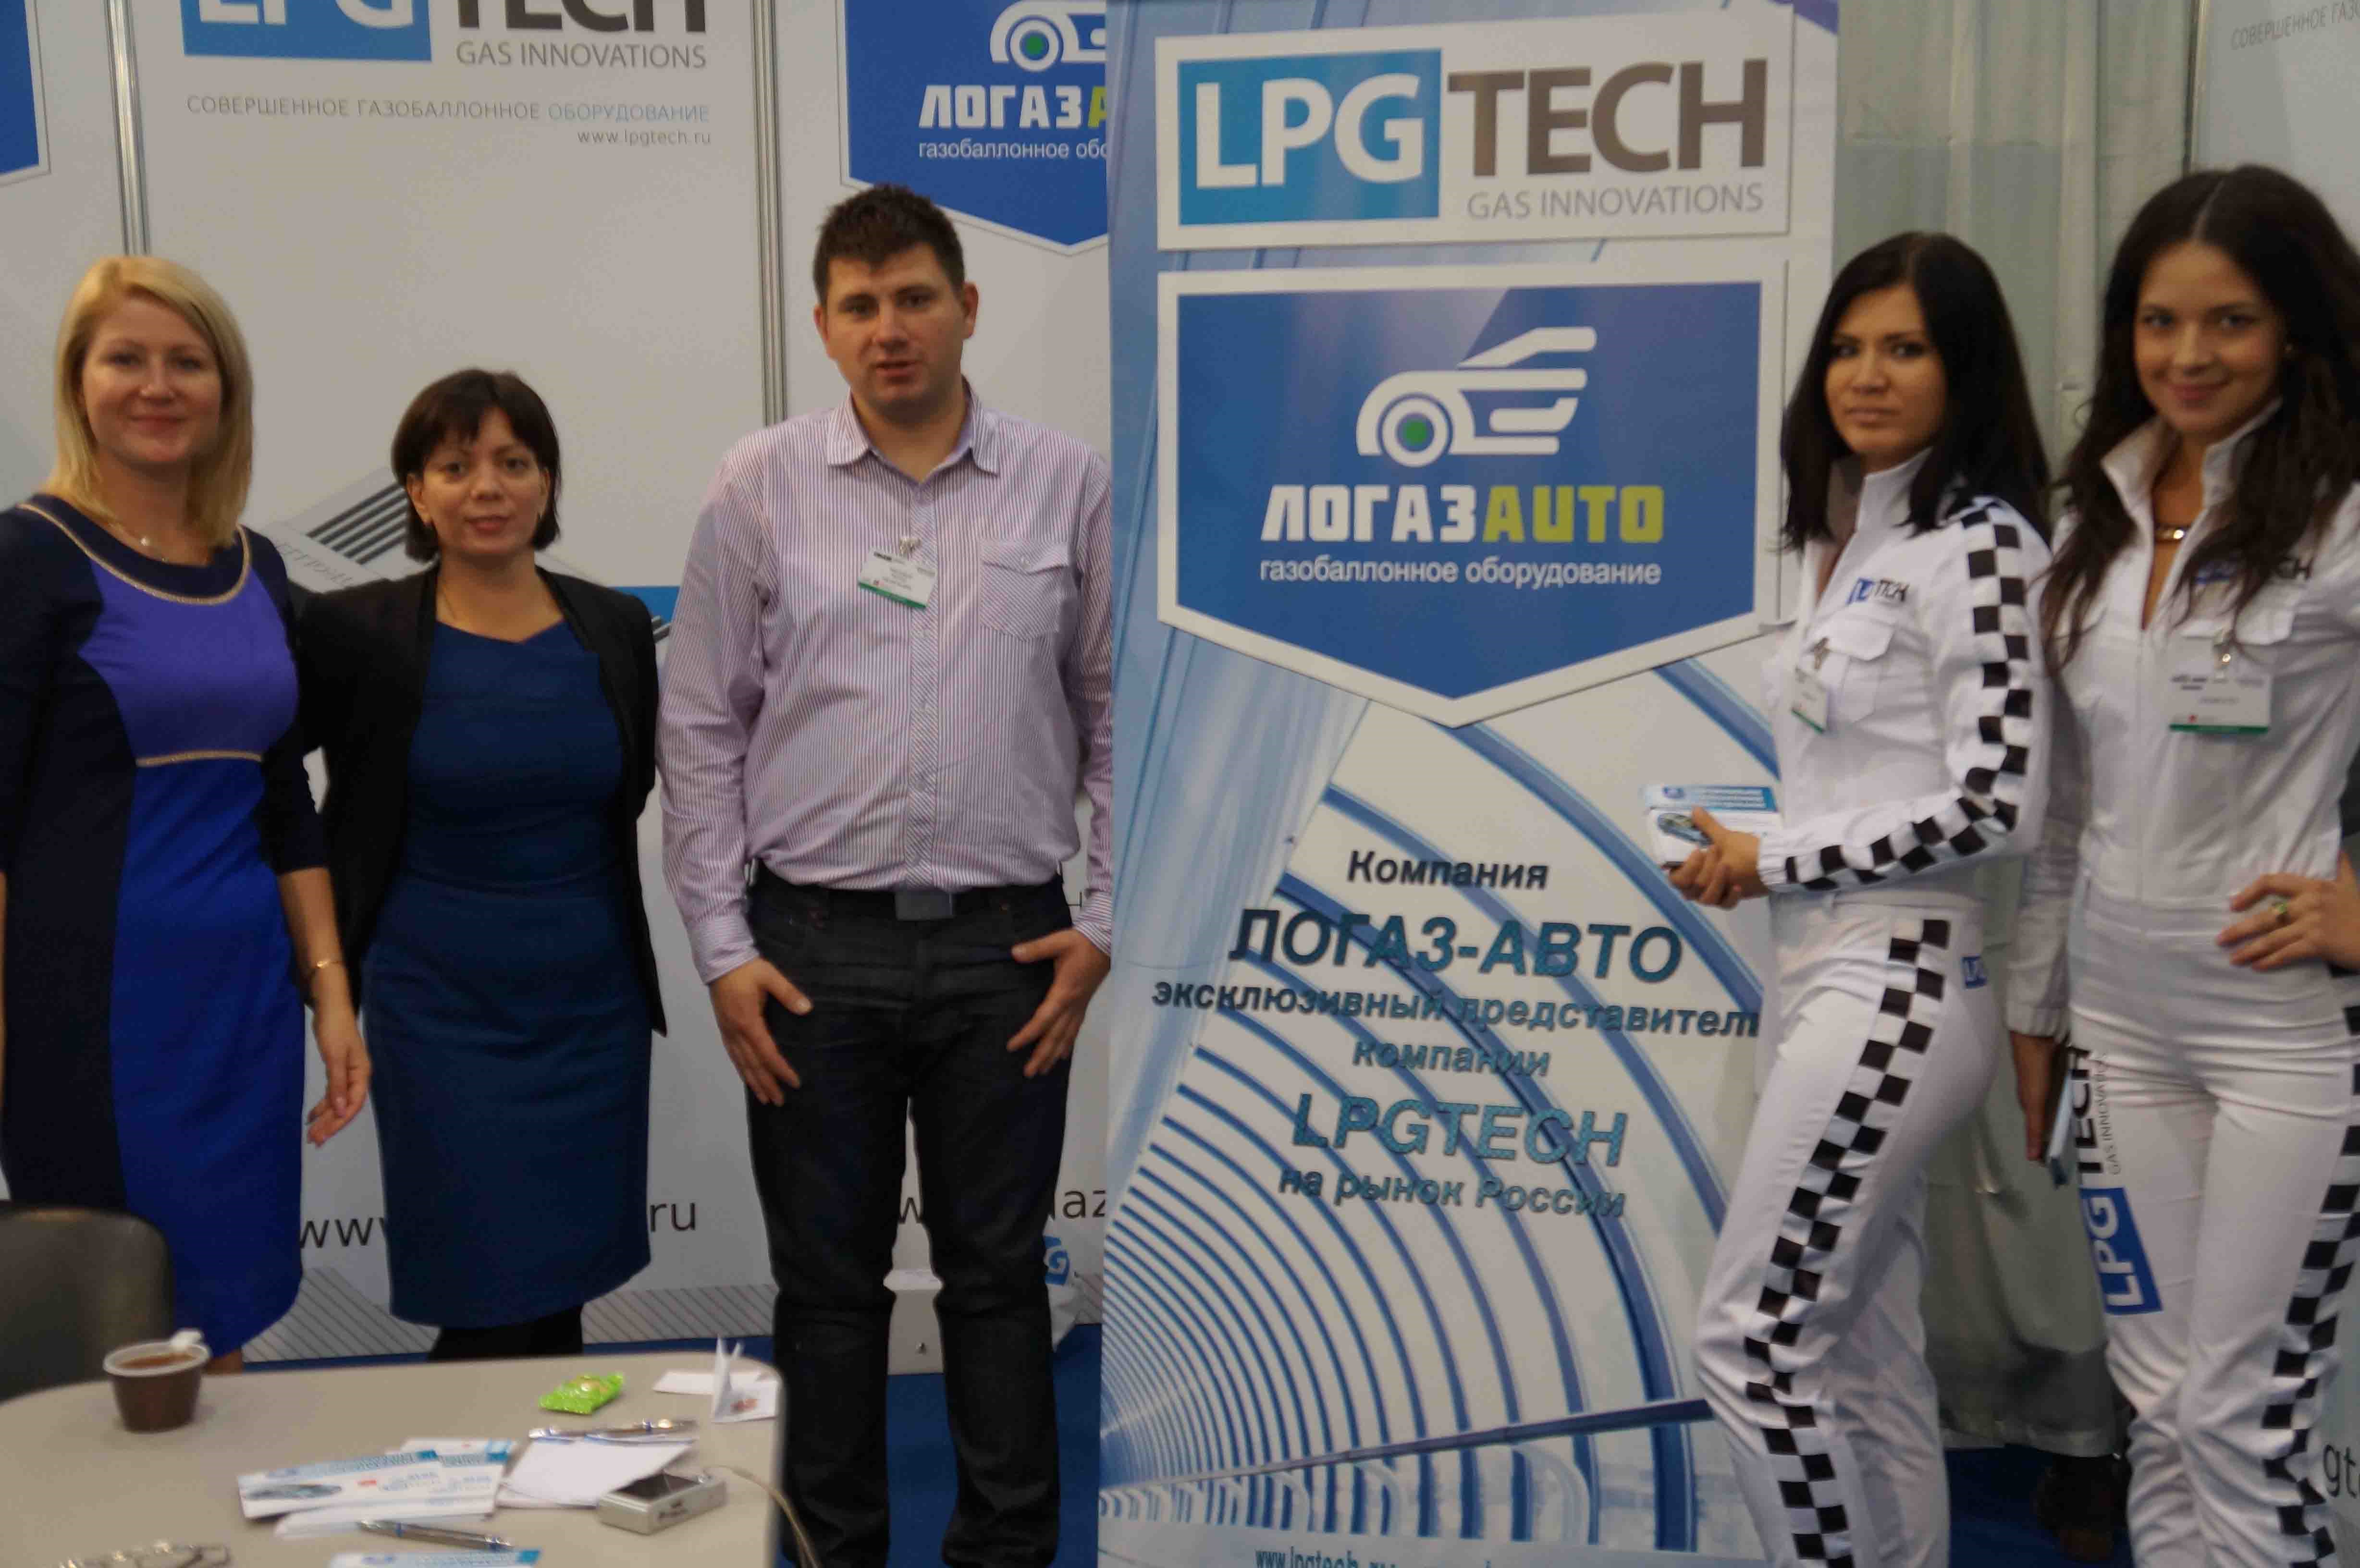 На нашей экспозиции на выставке GasSUF в Москве  в 2013 году вместе с ведущими специалистами из LPG TECH